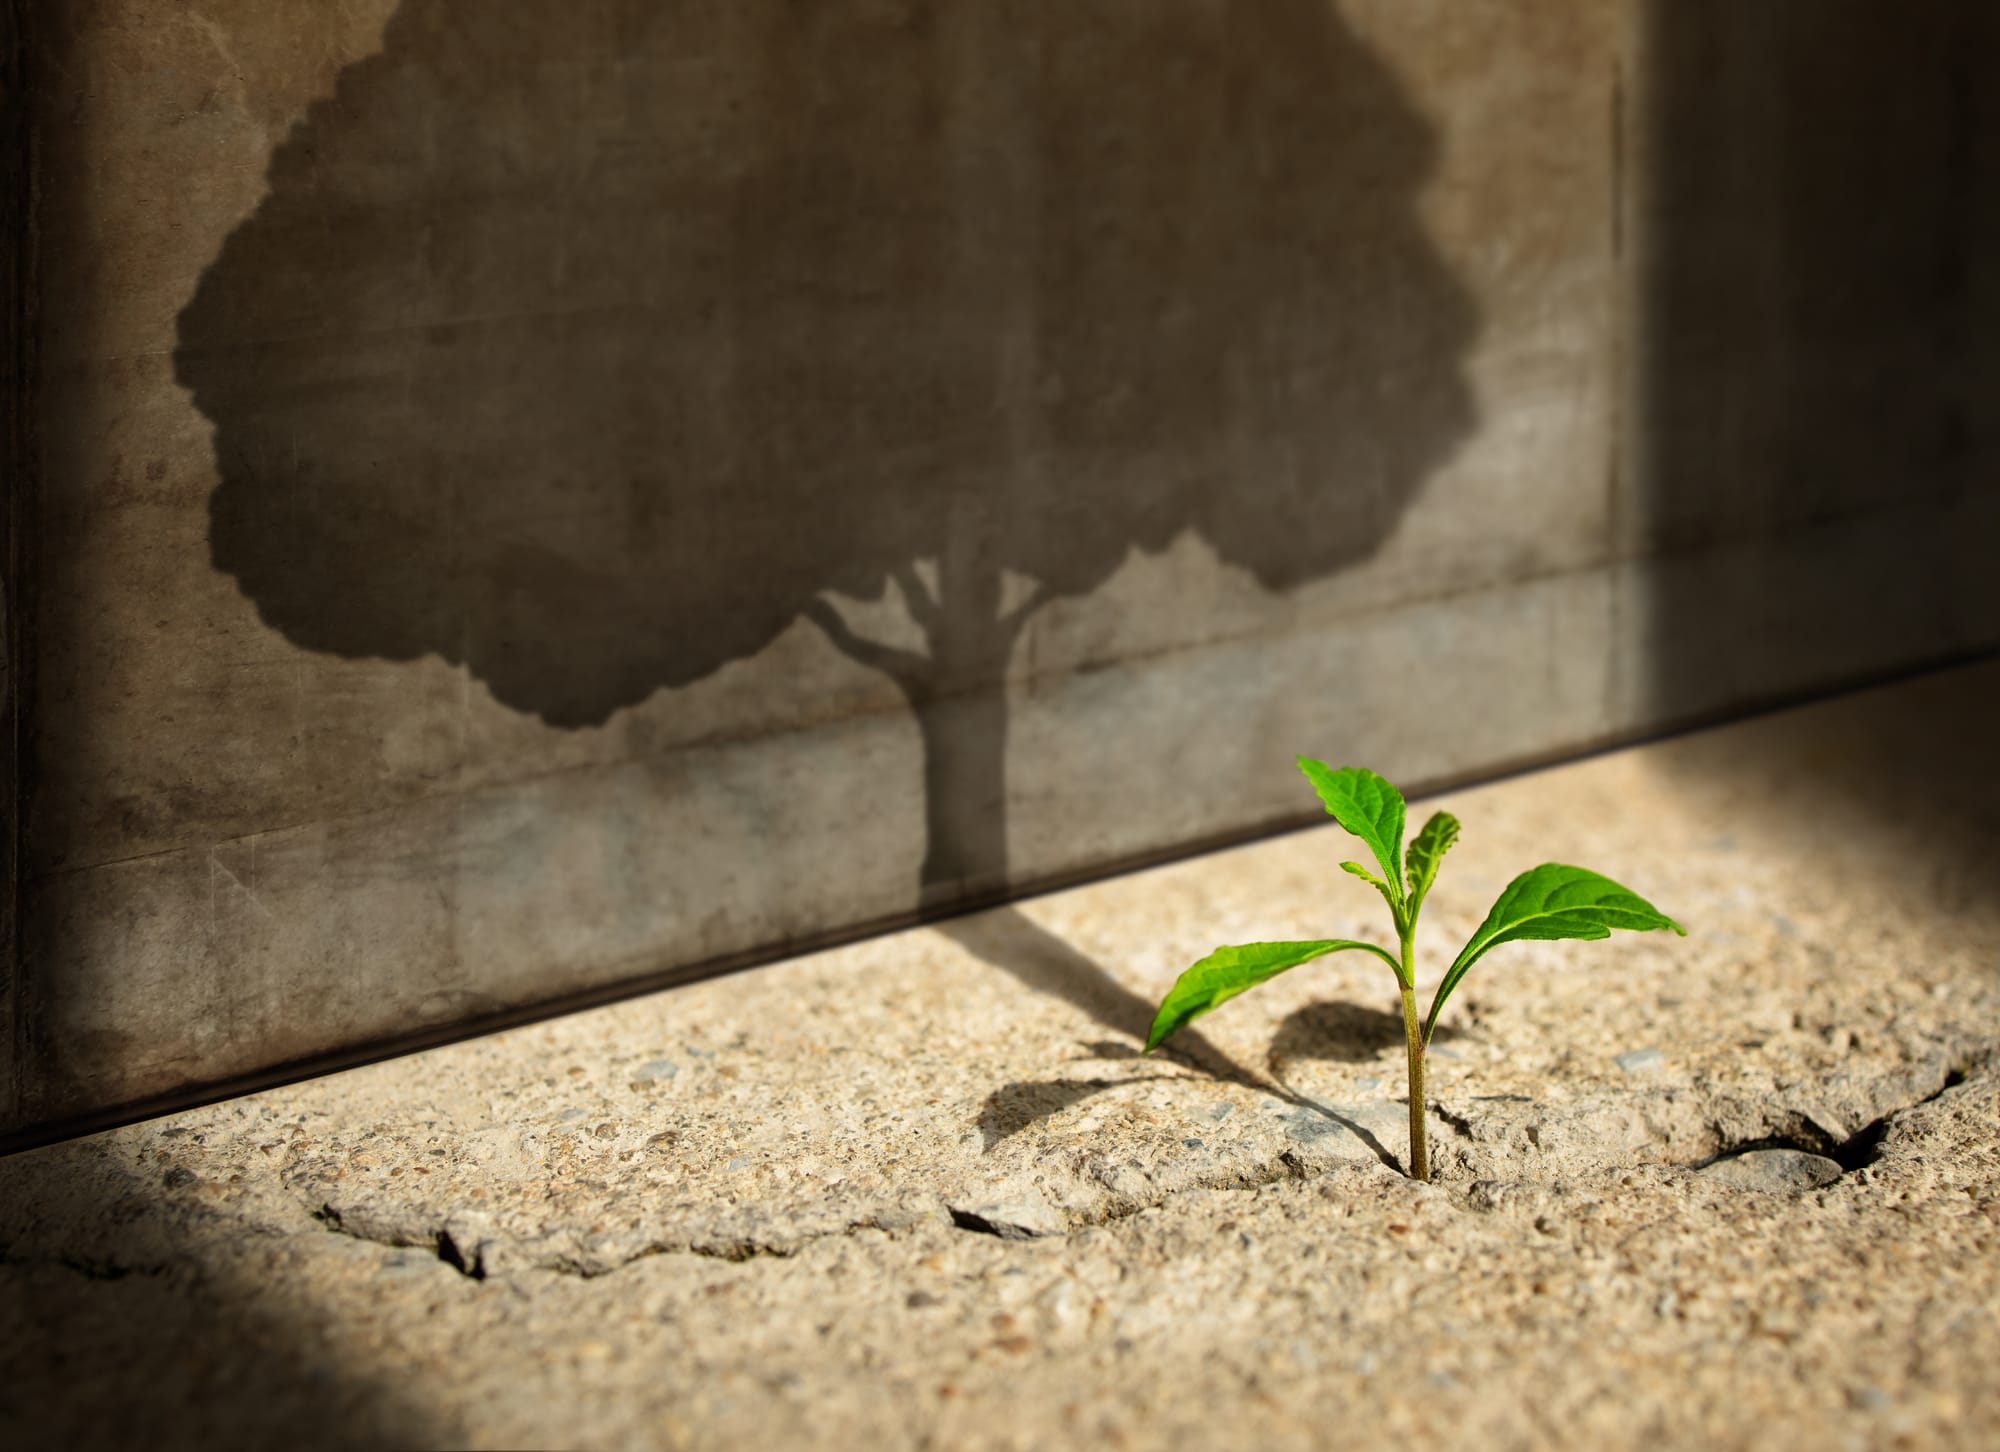 Une petite plante germe d’une fissure dans un plancher de béton, projetant l’ombre d’un arbre géant sur un mur à proximité.